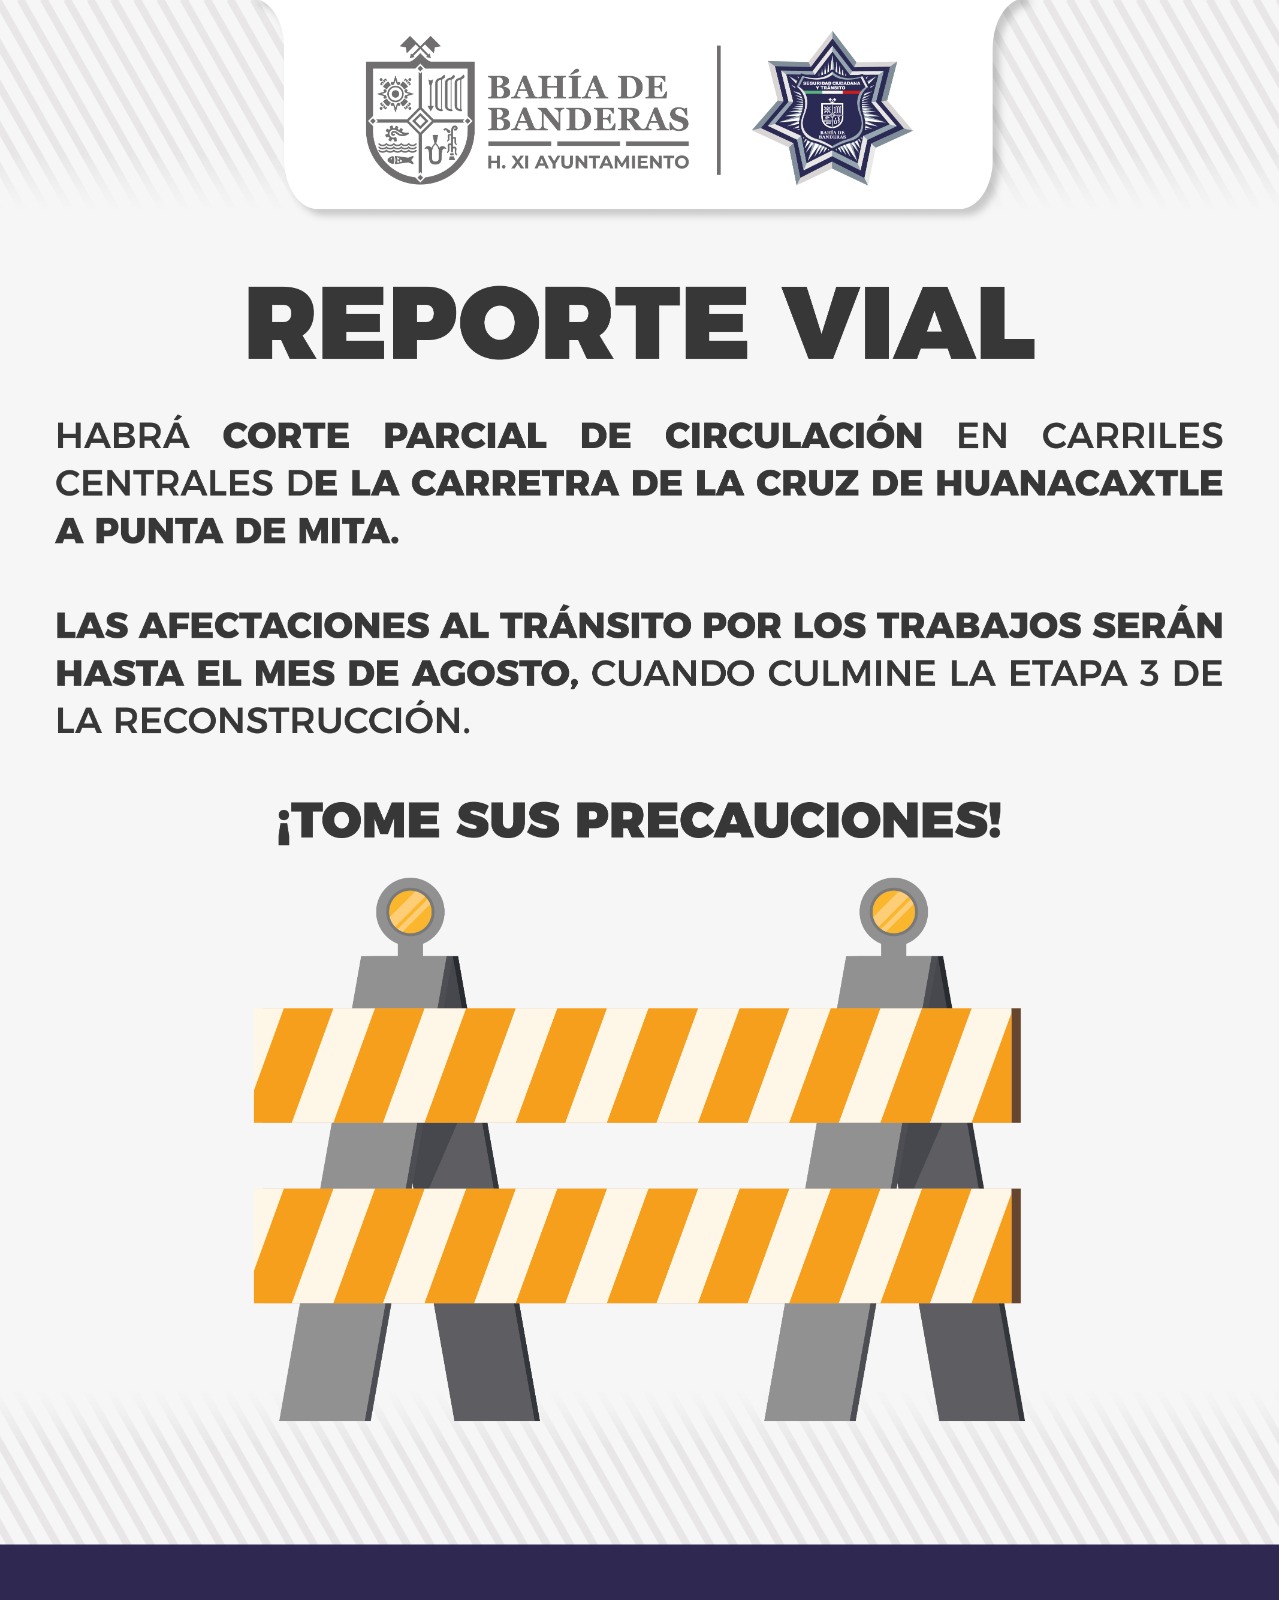 Habrá corte parcial de circulación en carriles centrales en La Cruz de Huanacaxtle por trabajos en la vía